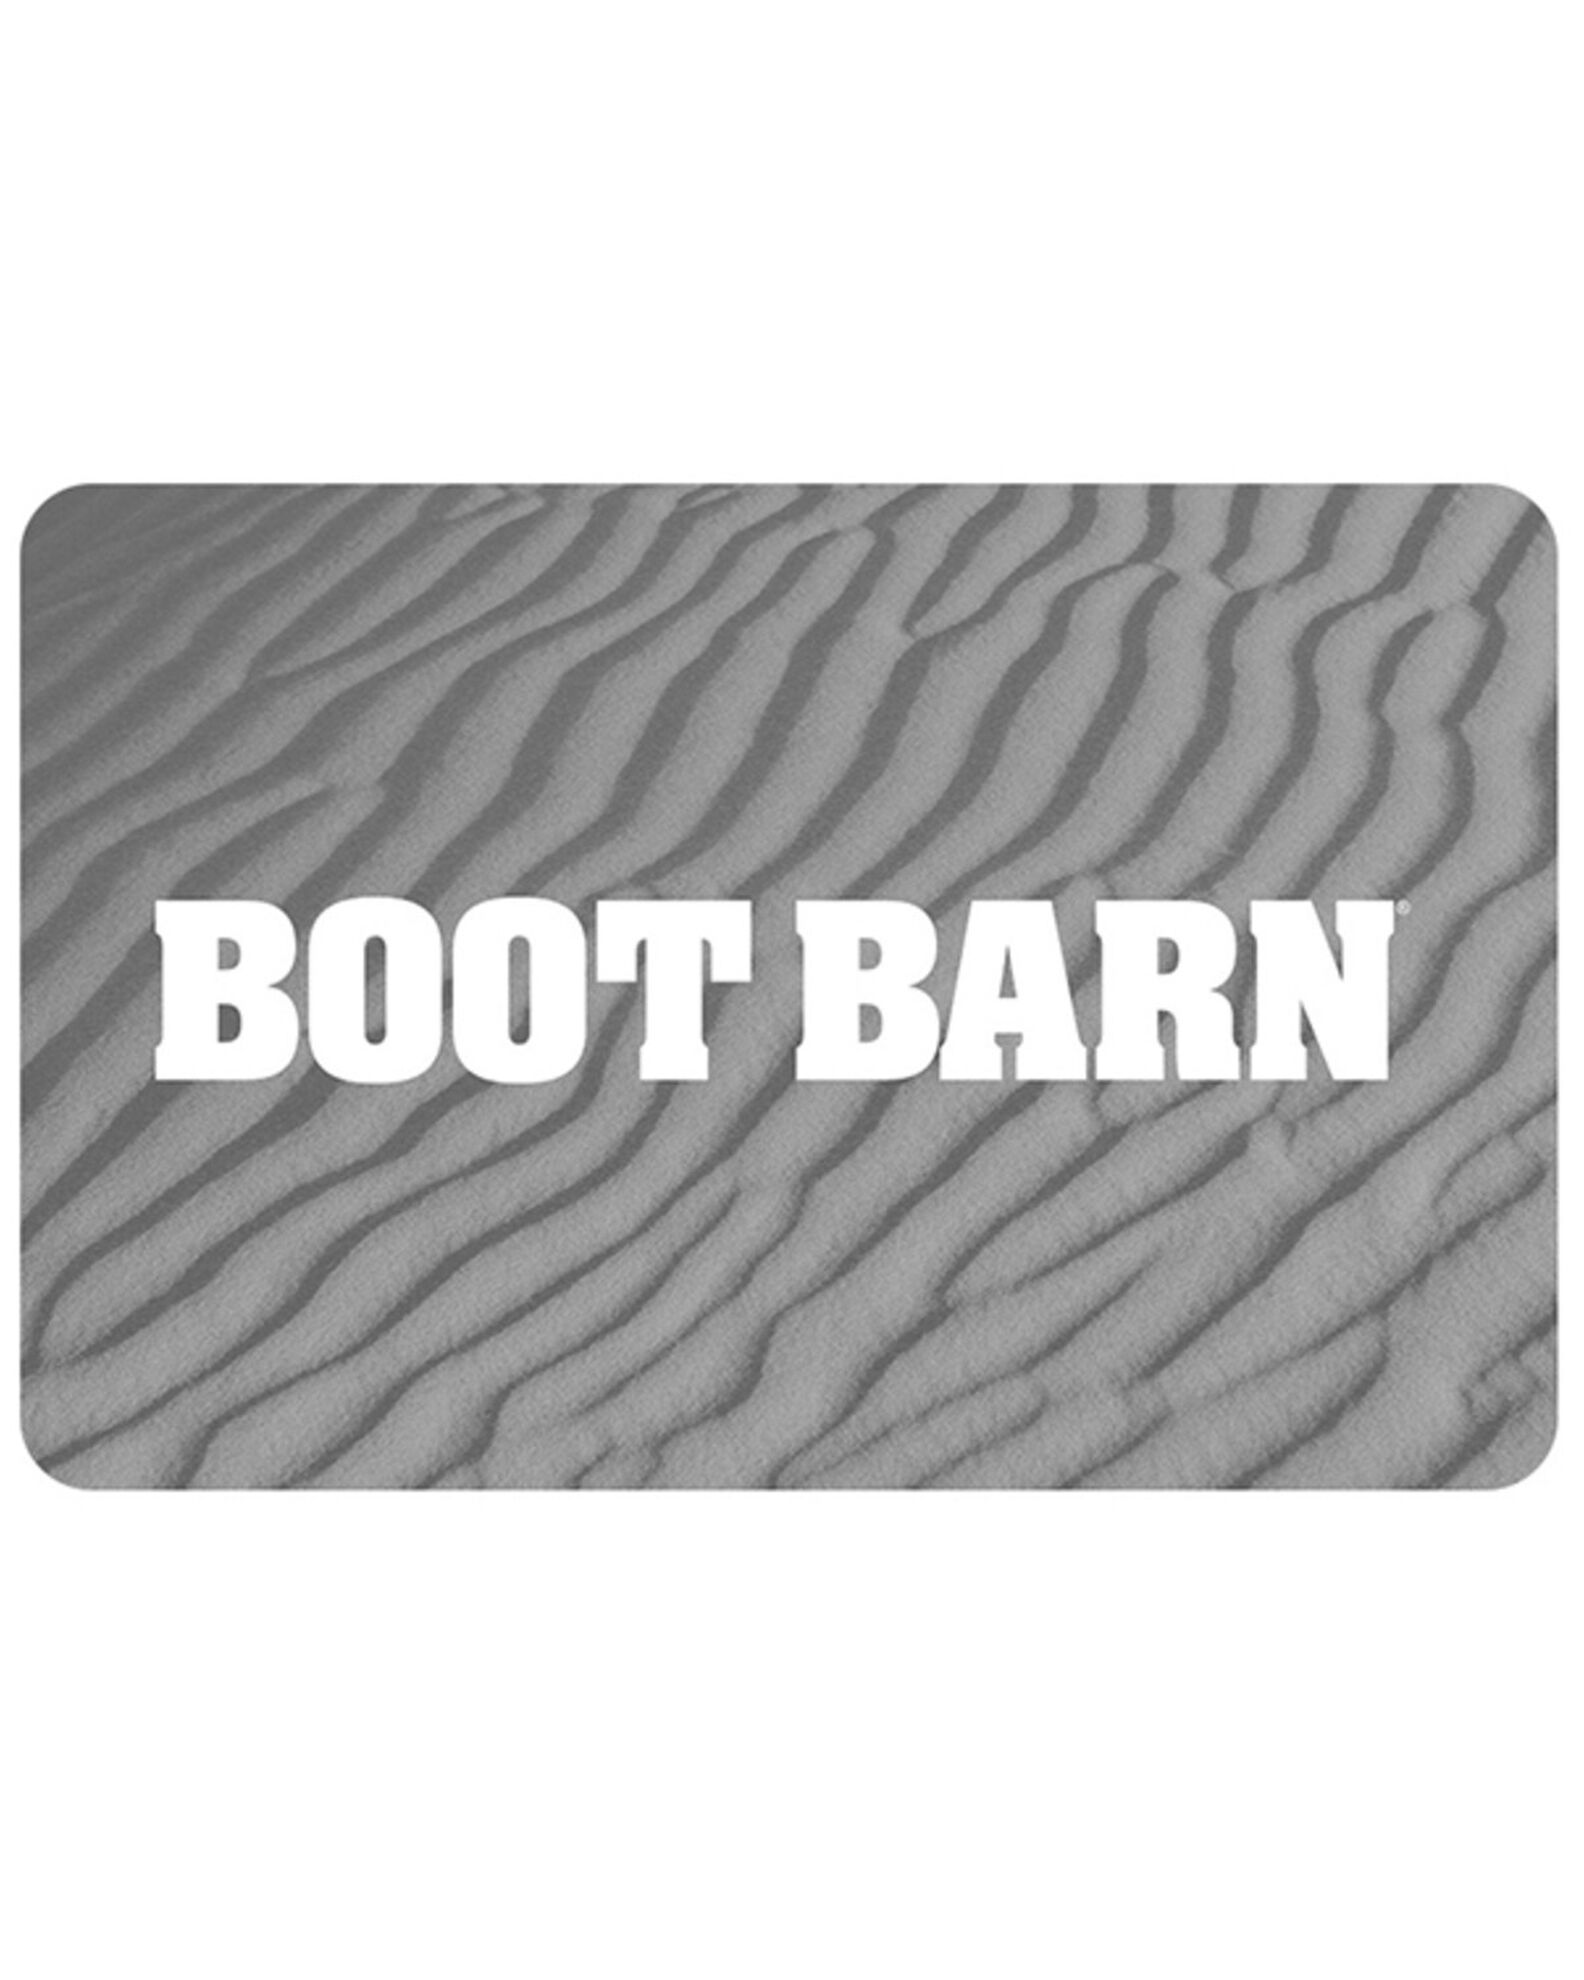 Boot Barn Sunset Logo Gift Card